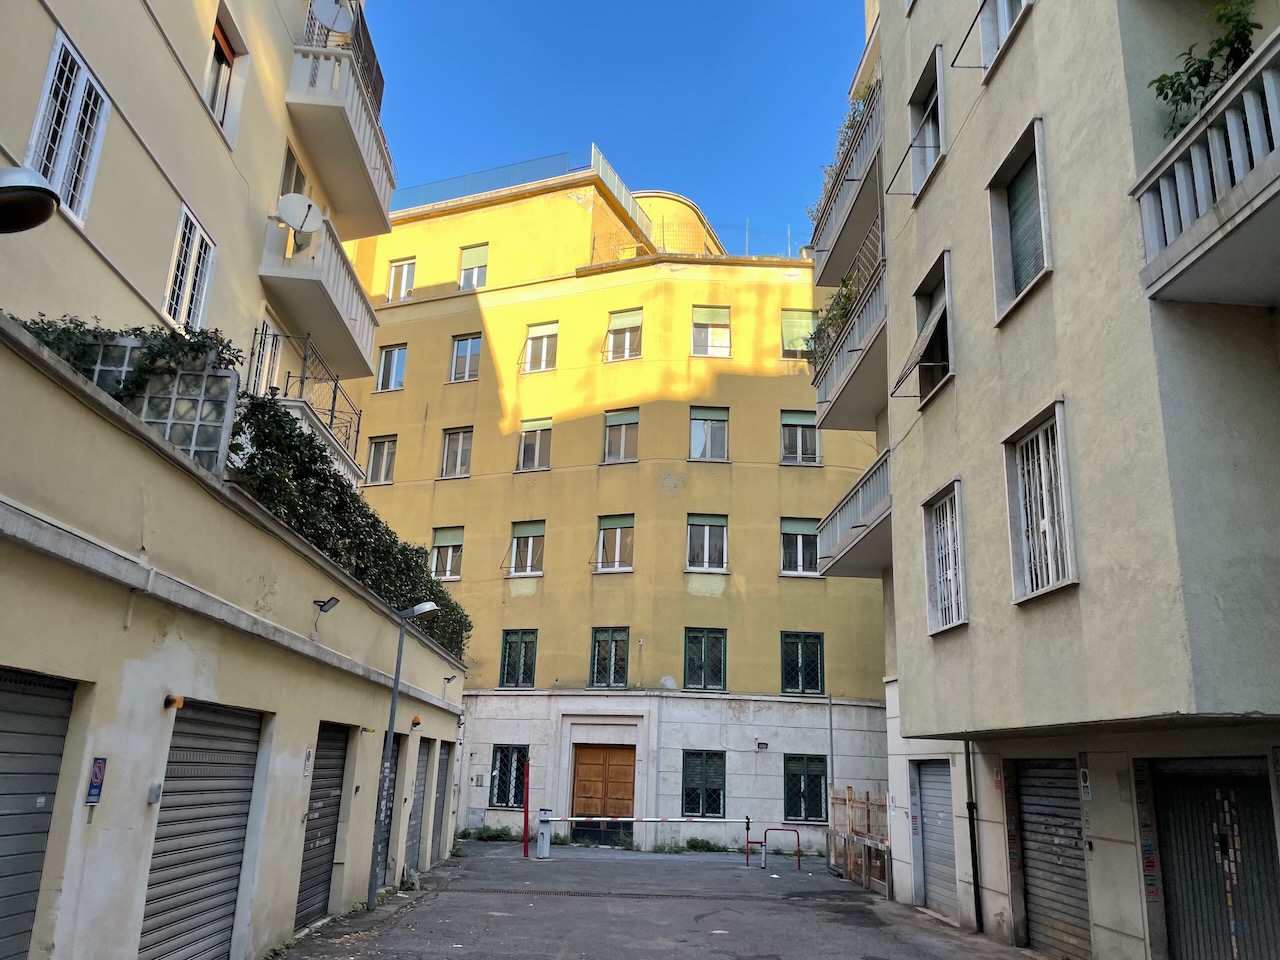 Edificio residenziale quartiere Parioli, Roma